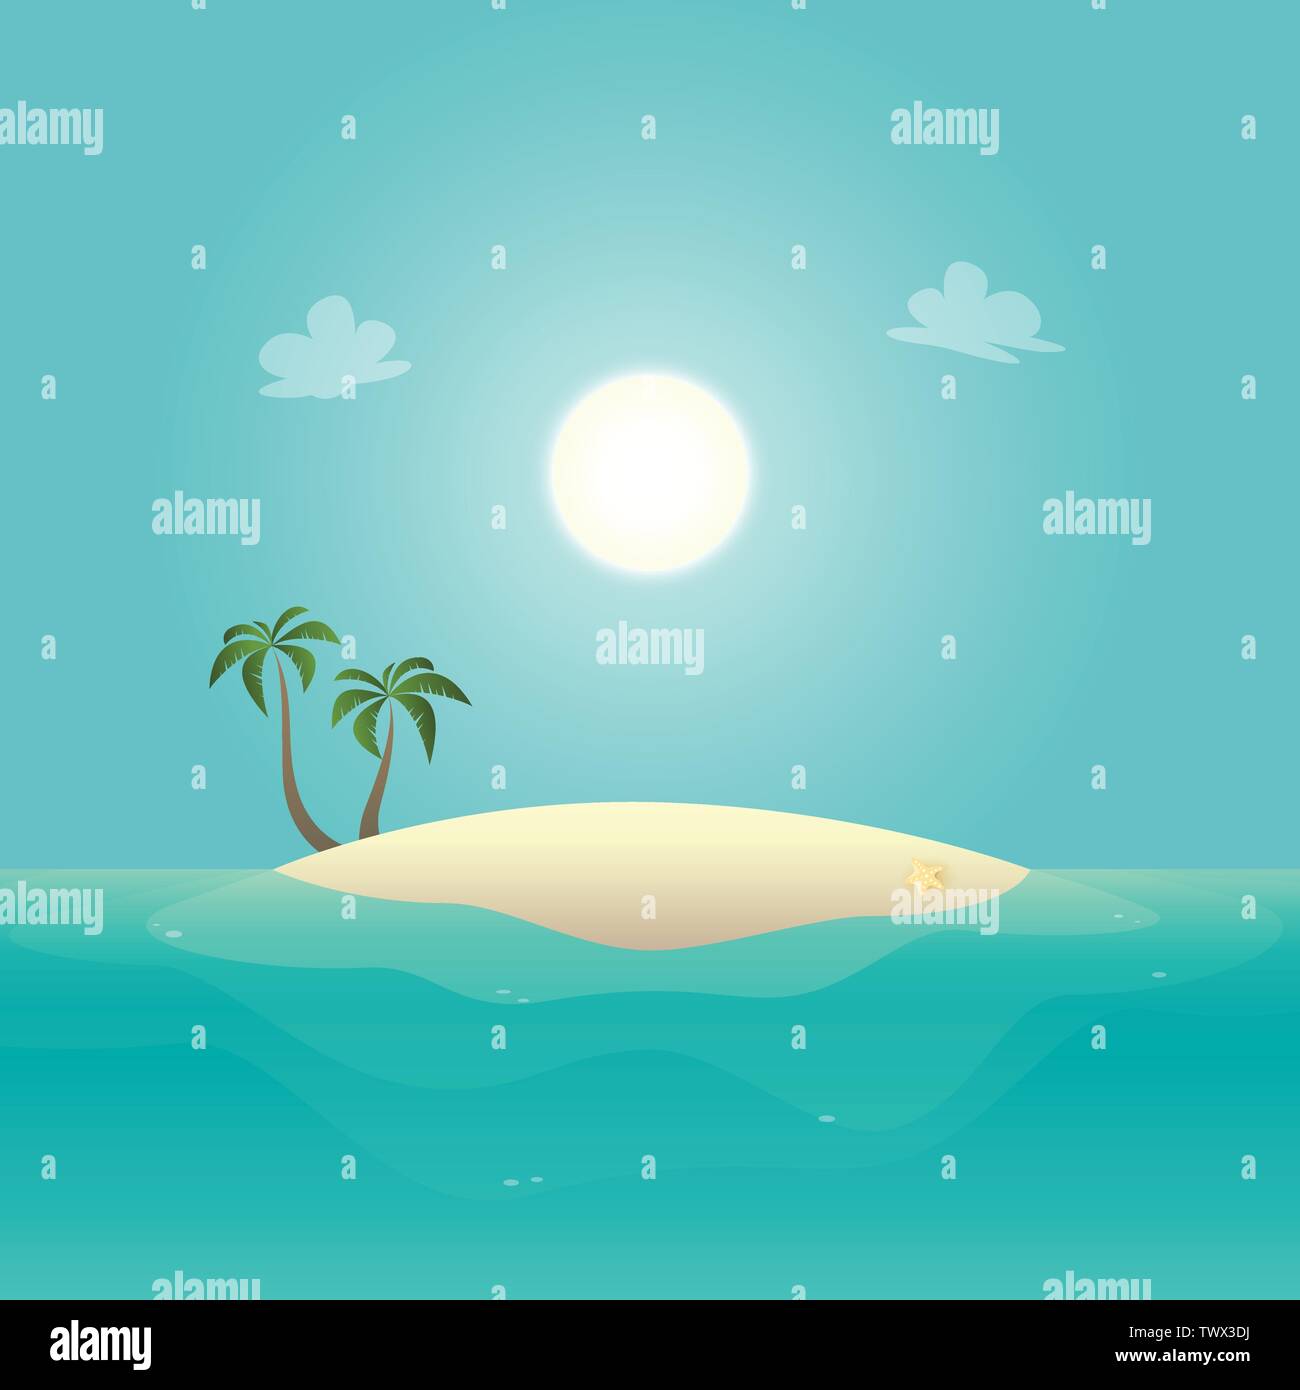 Sandige Insel mit Palmen am sonnigen Tag - Sommer Hintergrund Stock Vektor